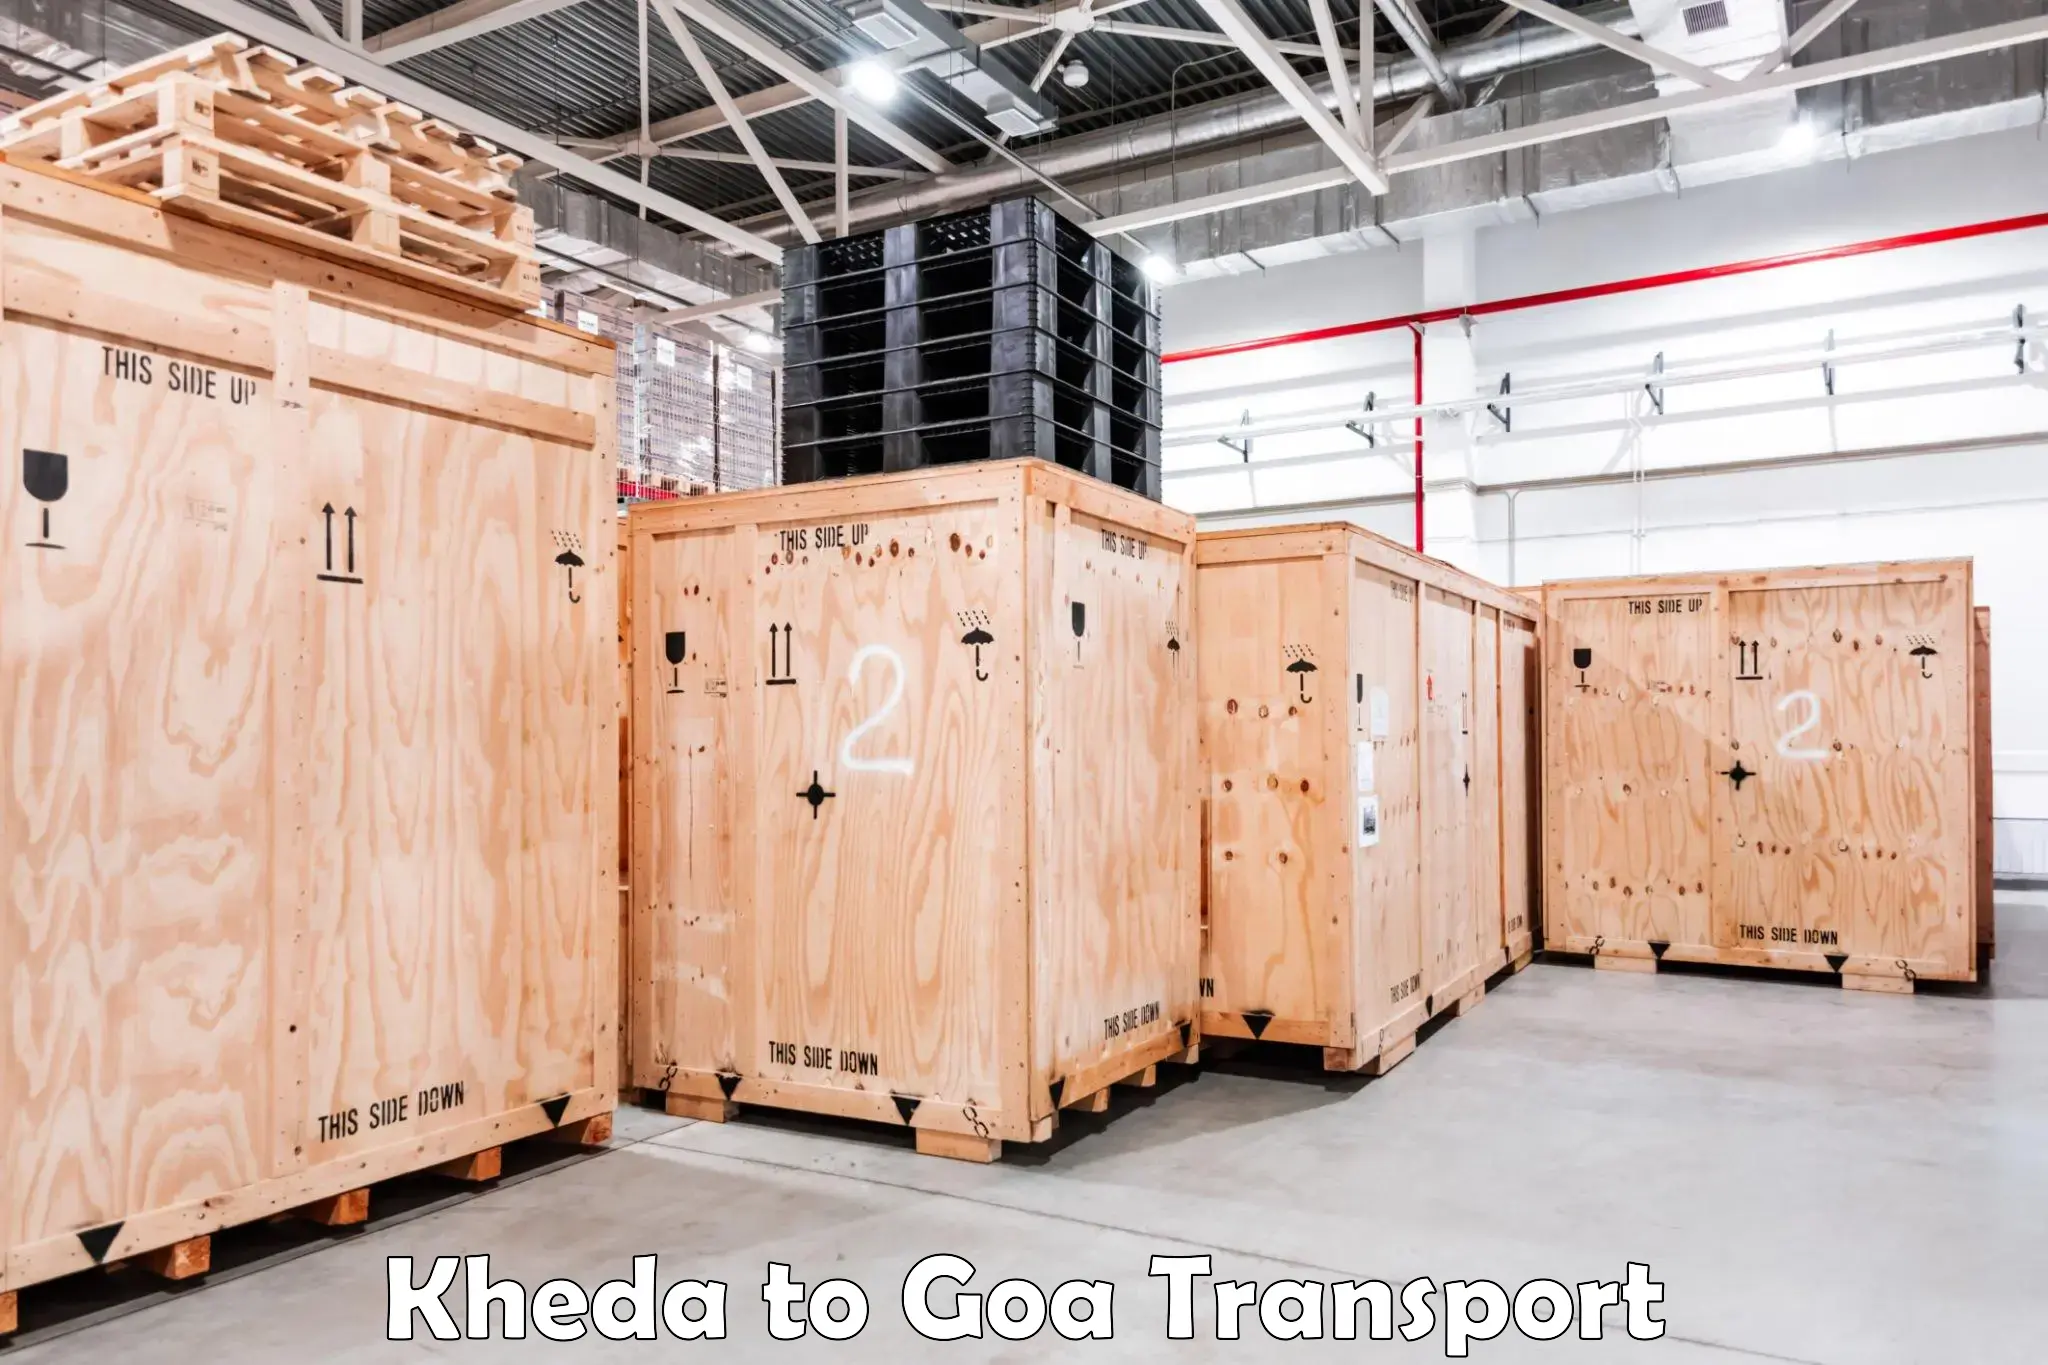 Online transport service Kheda to IIT Goa